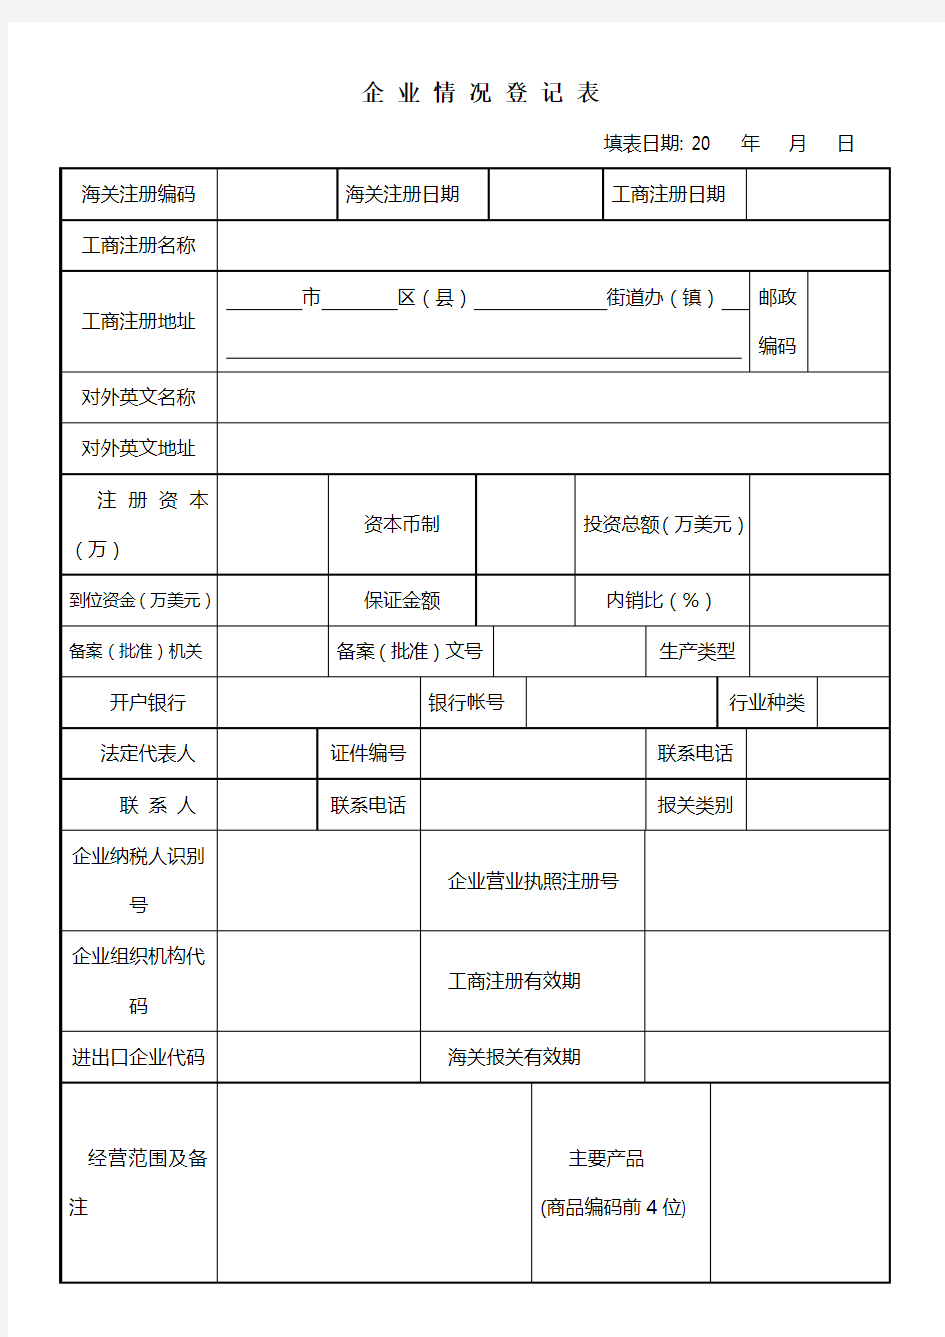 企业情况登记表(海关)